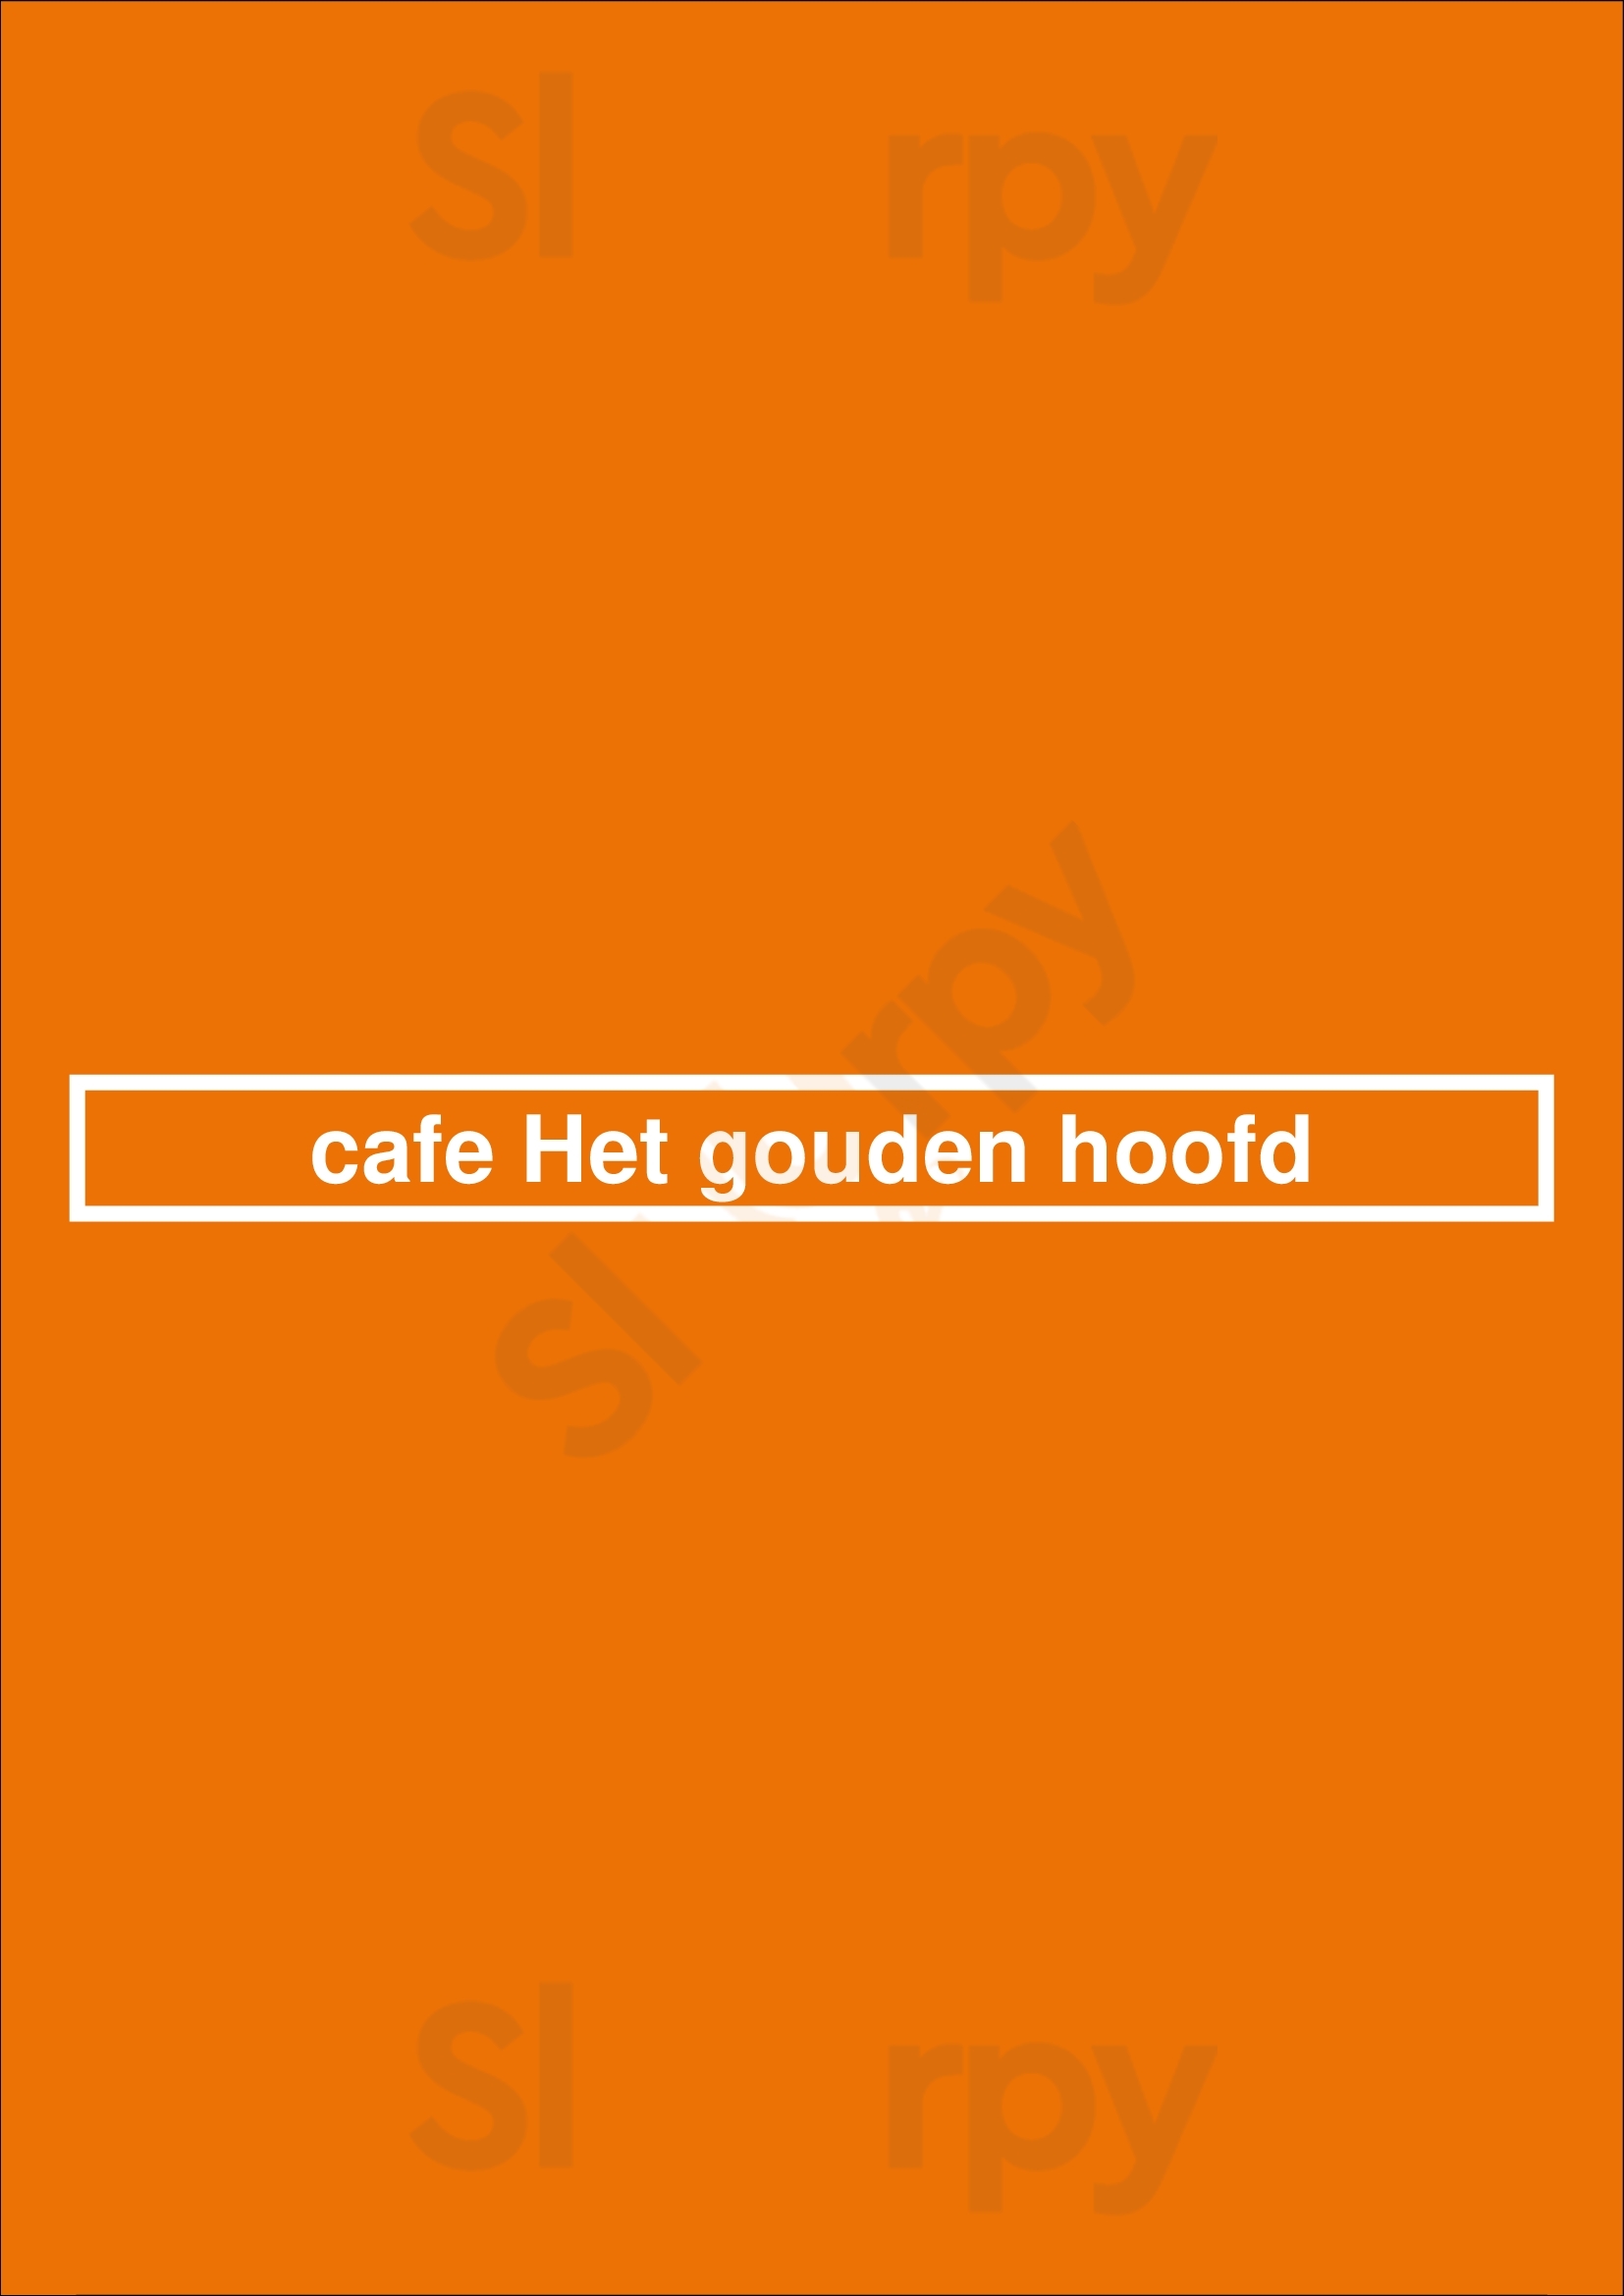 Cafe Het Gouden Hoofd Gand Menu - 1